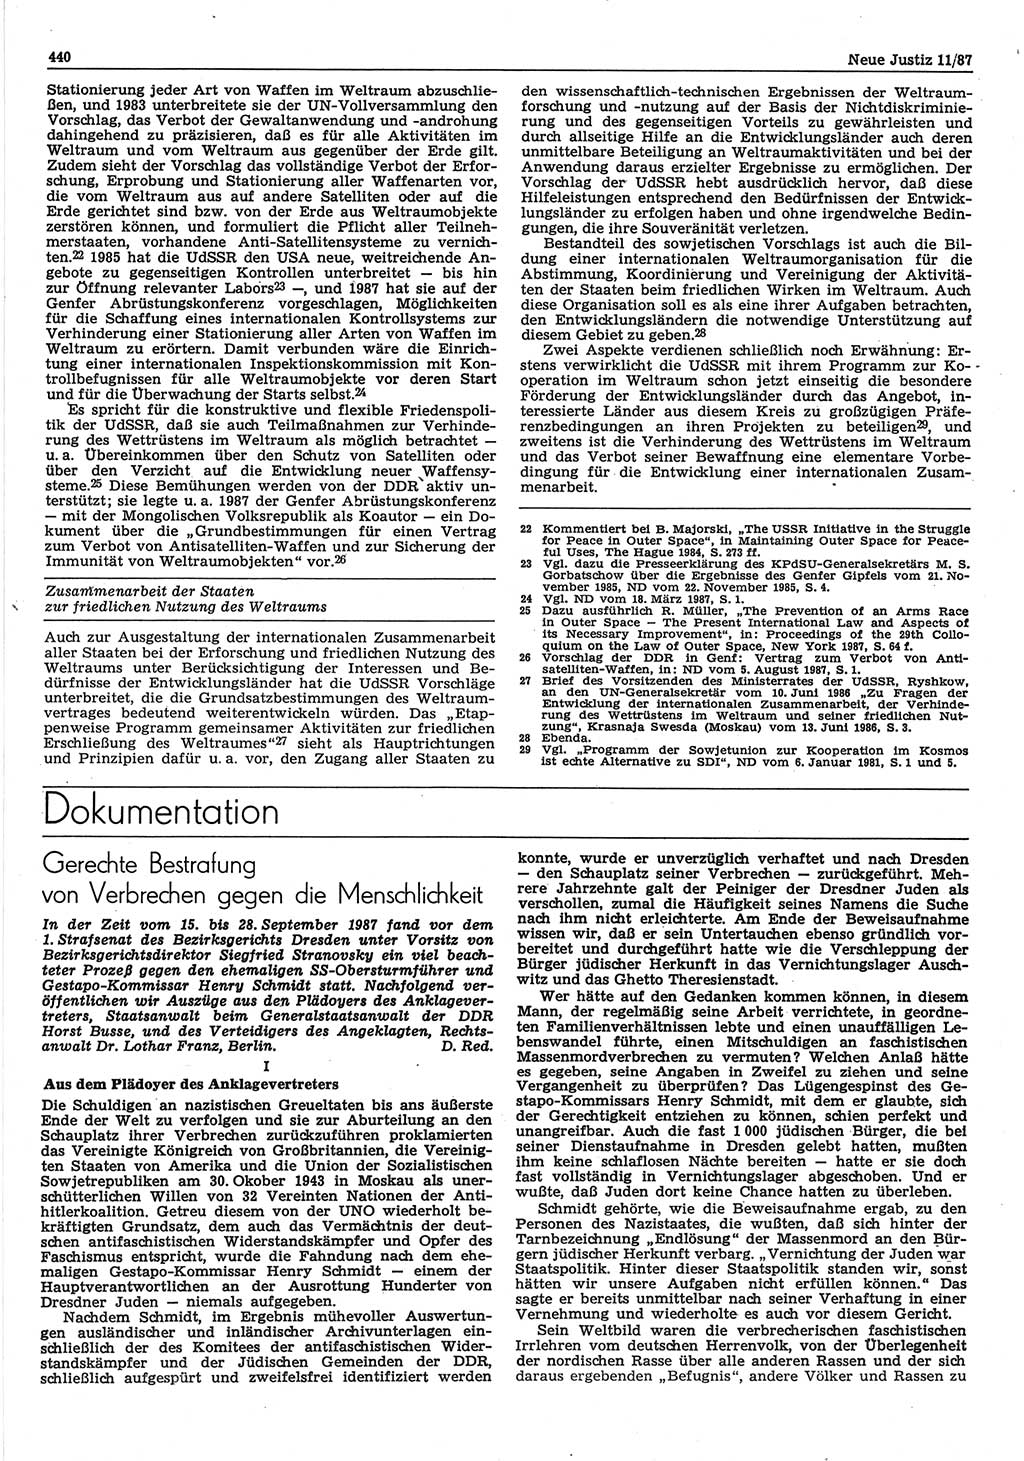 Neue Justiz (NJ), Zeitschrift für sozialistisches Recht und Gesetzlichkeit [Deutsche Demokratische Republik (DDR)], 41. Jahrgang 1987, Seite 440 (NJ DDR 1987, S. 440)